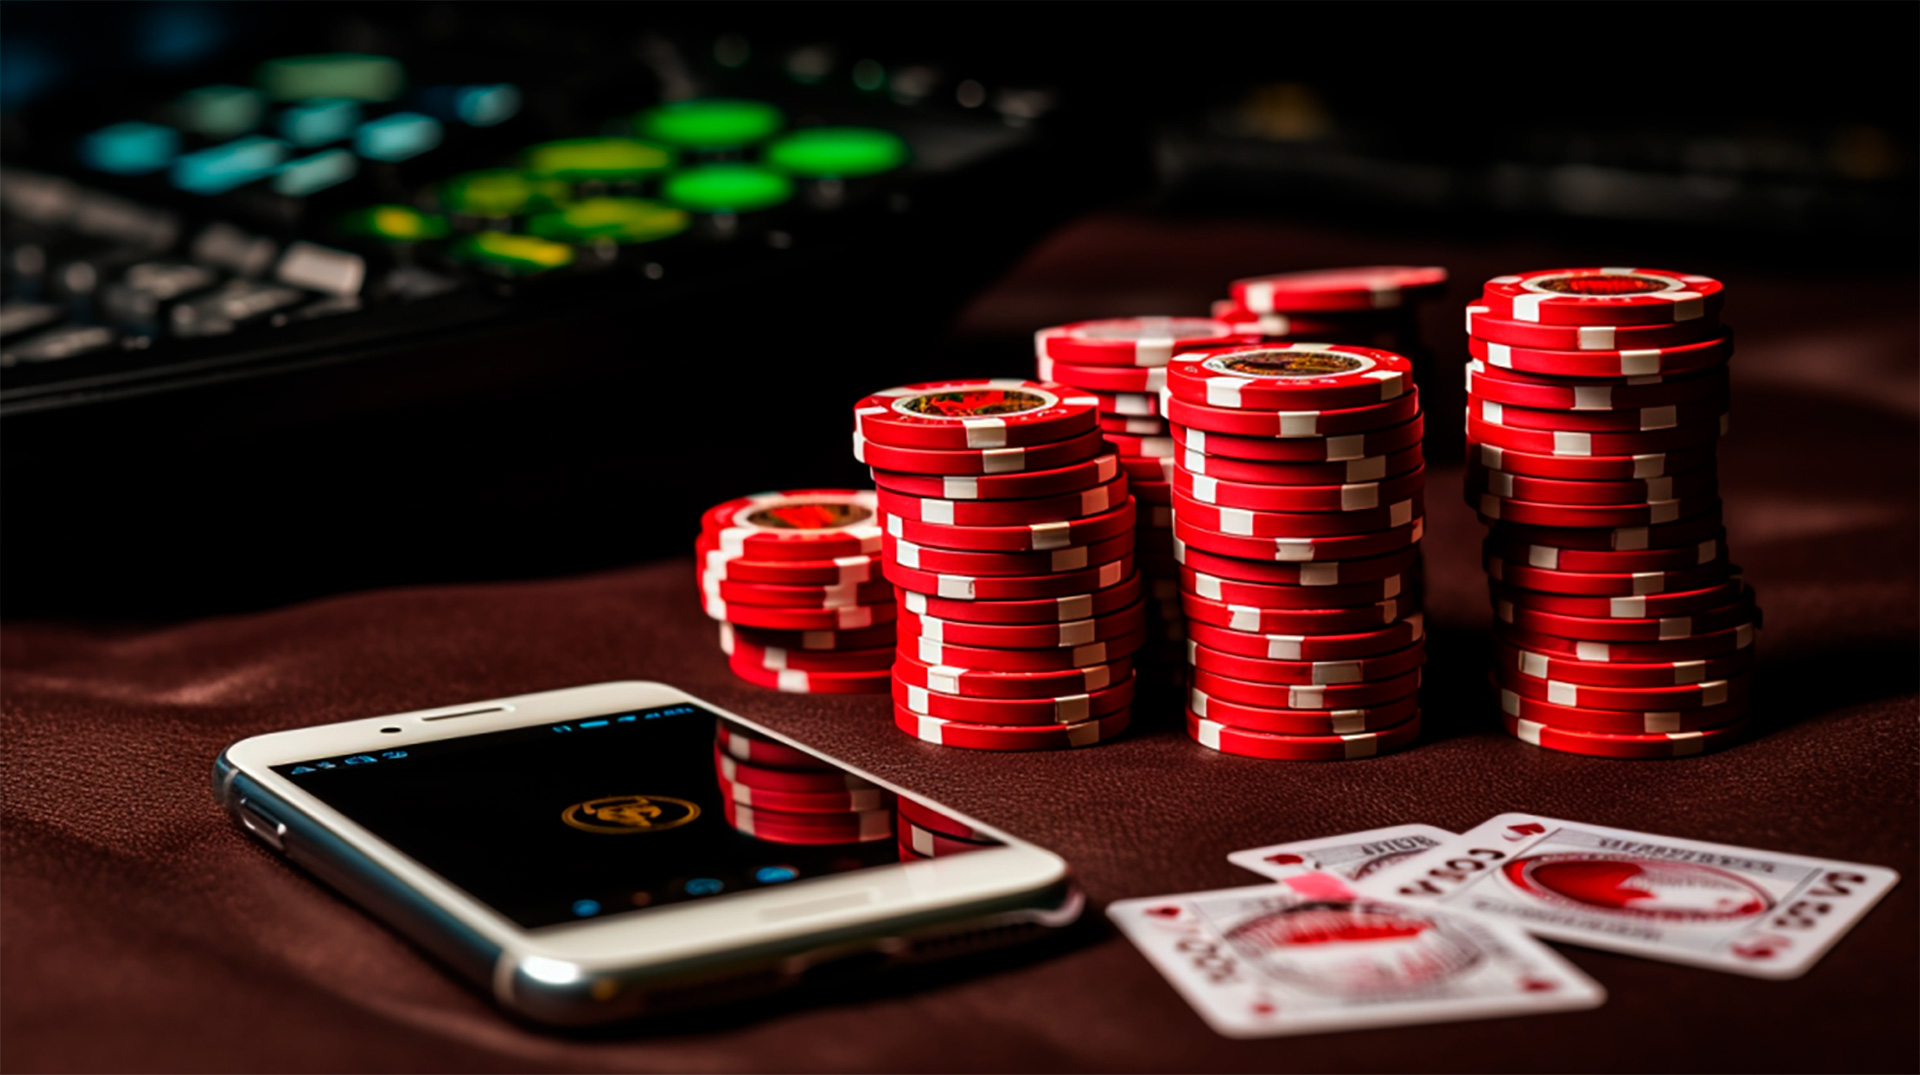 Gaming and gambling